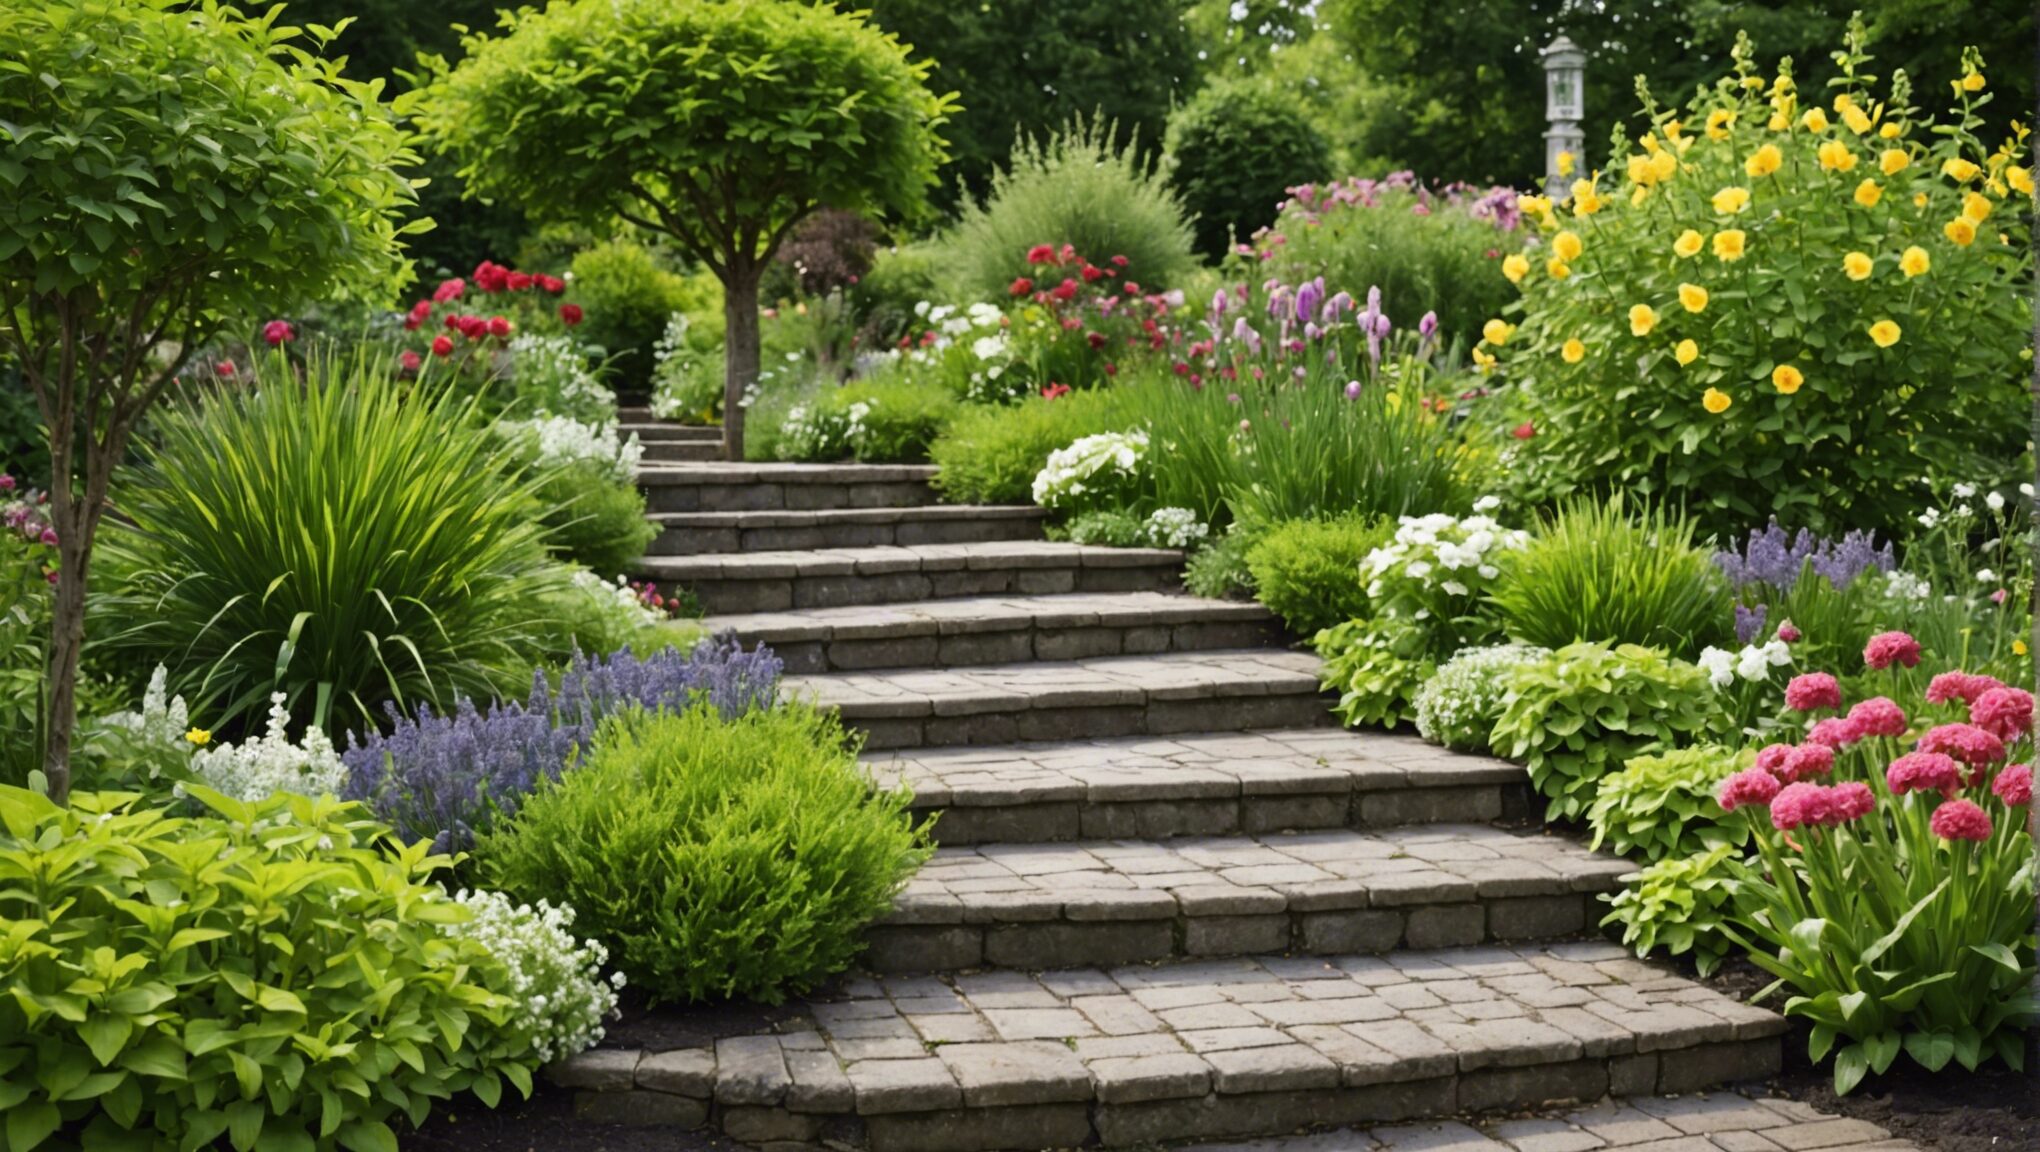 découvrez les étapes essentielles pour aménager et entretenir votre jardin facilement en mai avec nos conseils pratiques.